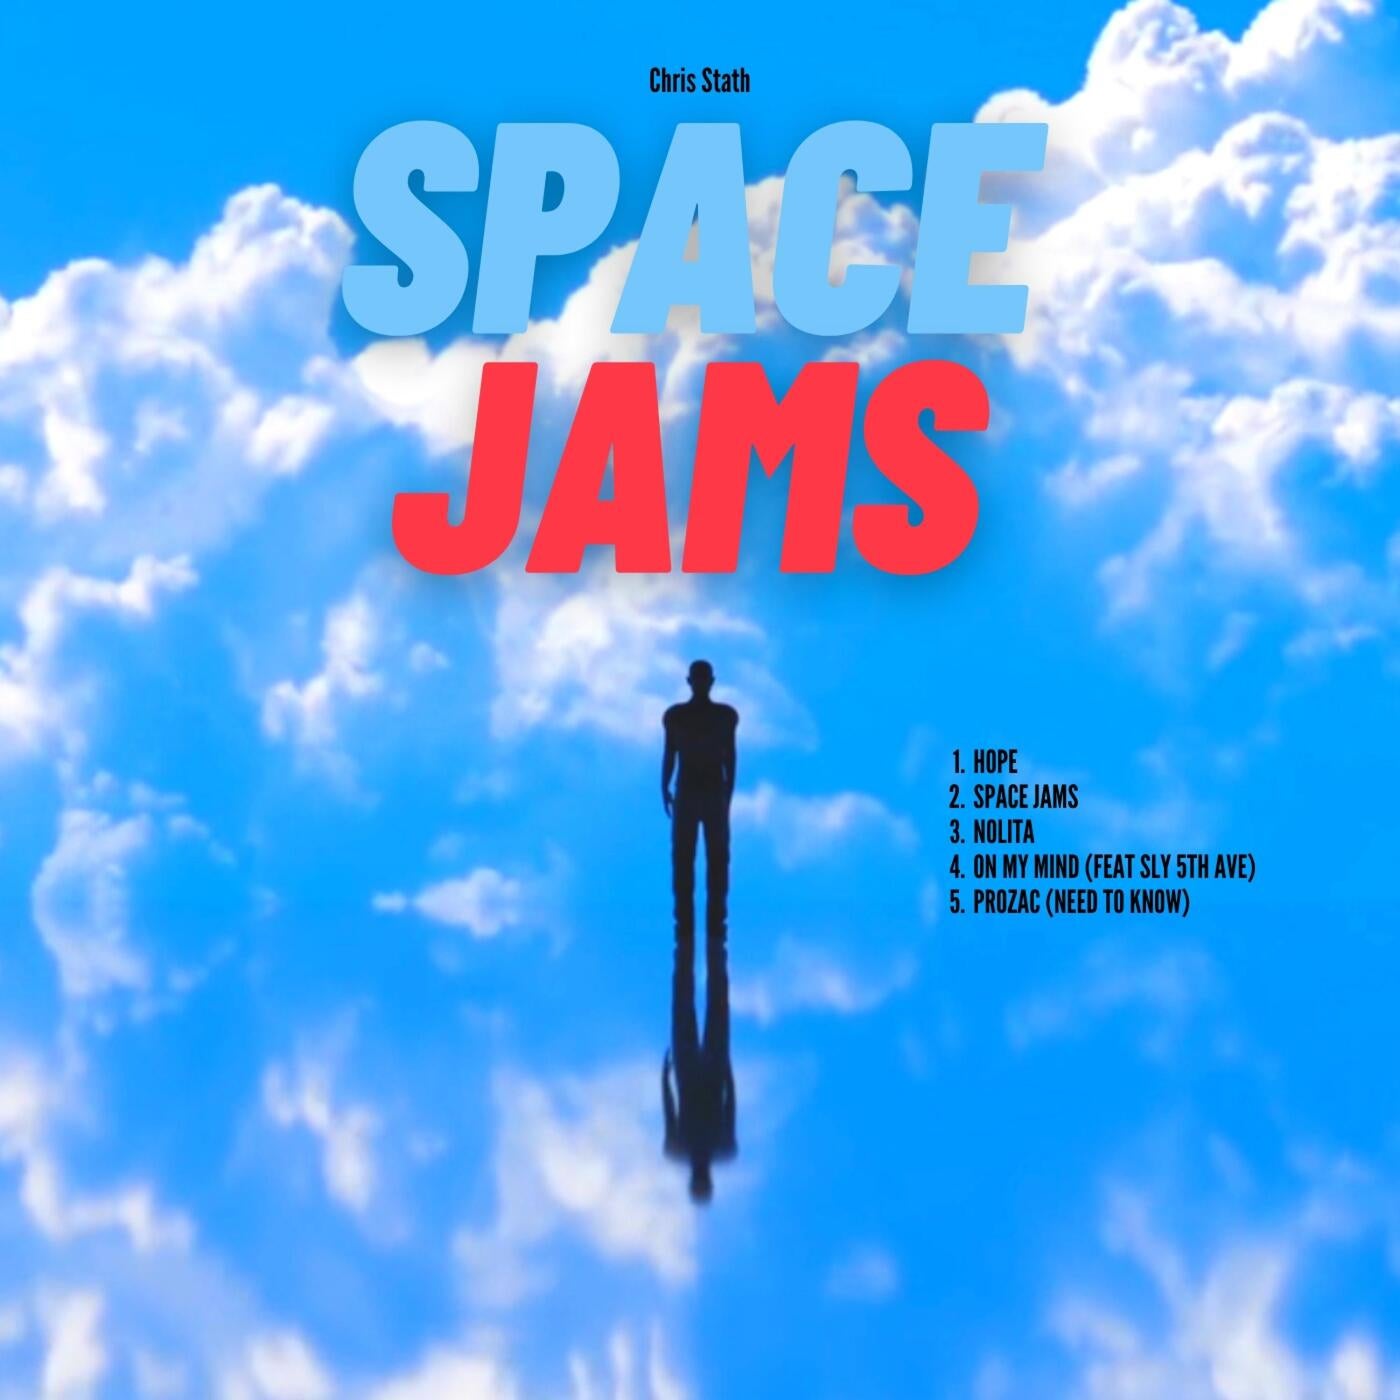 Space Jams